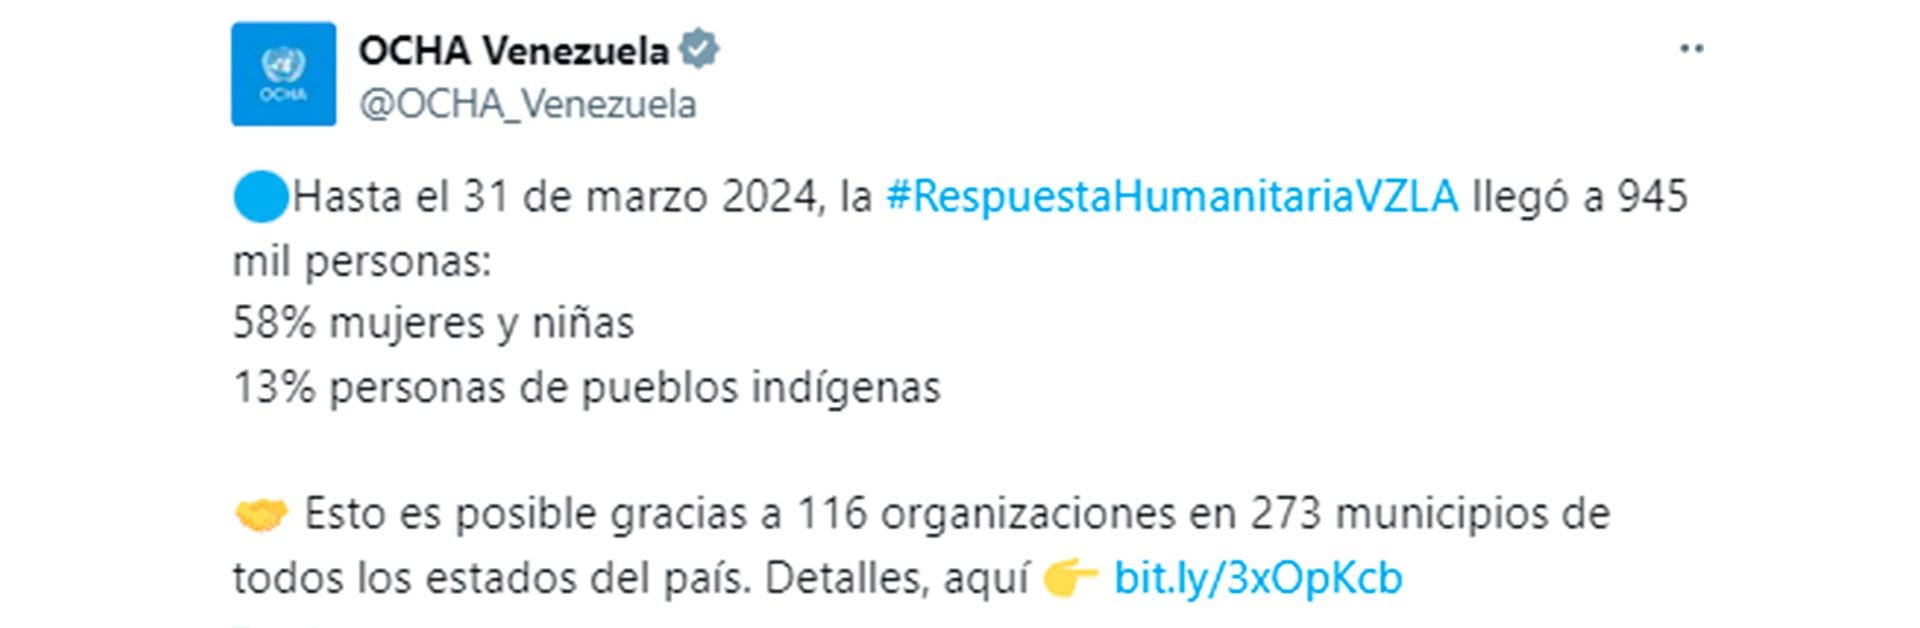 La publicación de OCHA en X (OCHA_Venezuela)